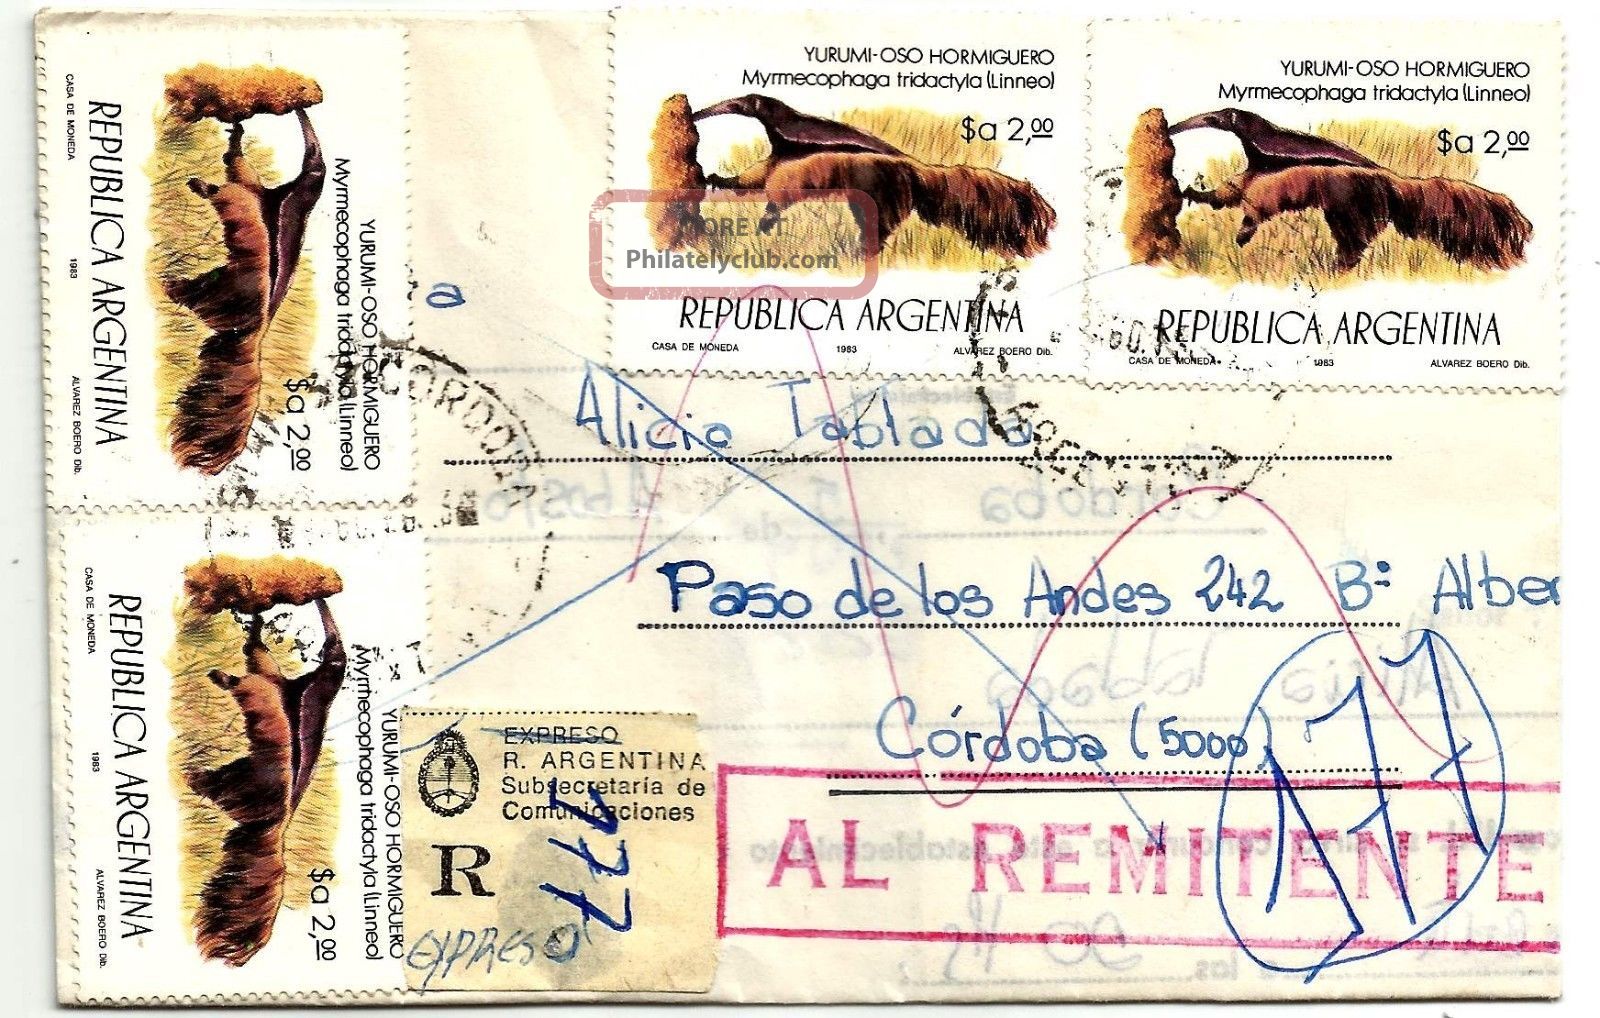 CÓrdoba1983 Express Inflation Rate Wonderful Postage 4 Ant Eater Animal;returned Latin America photo